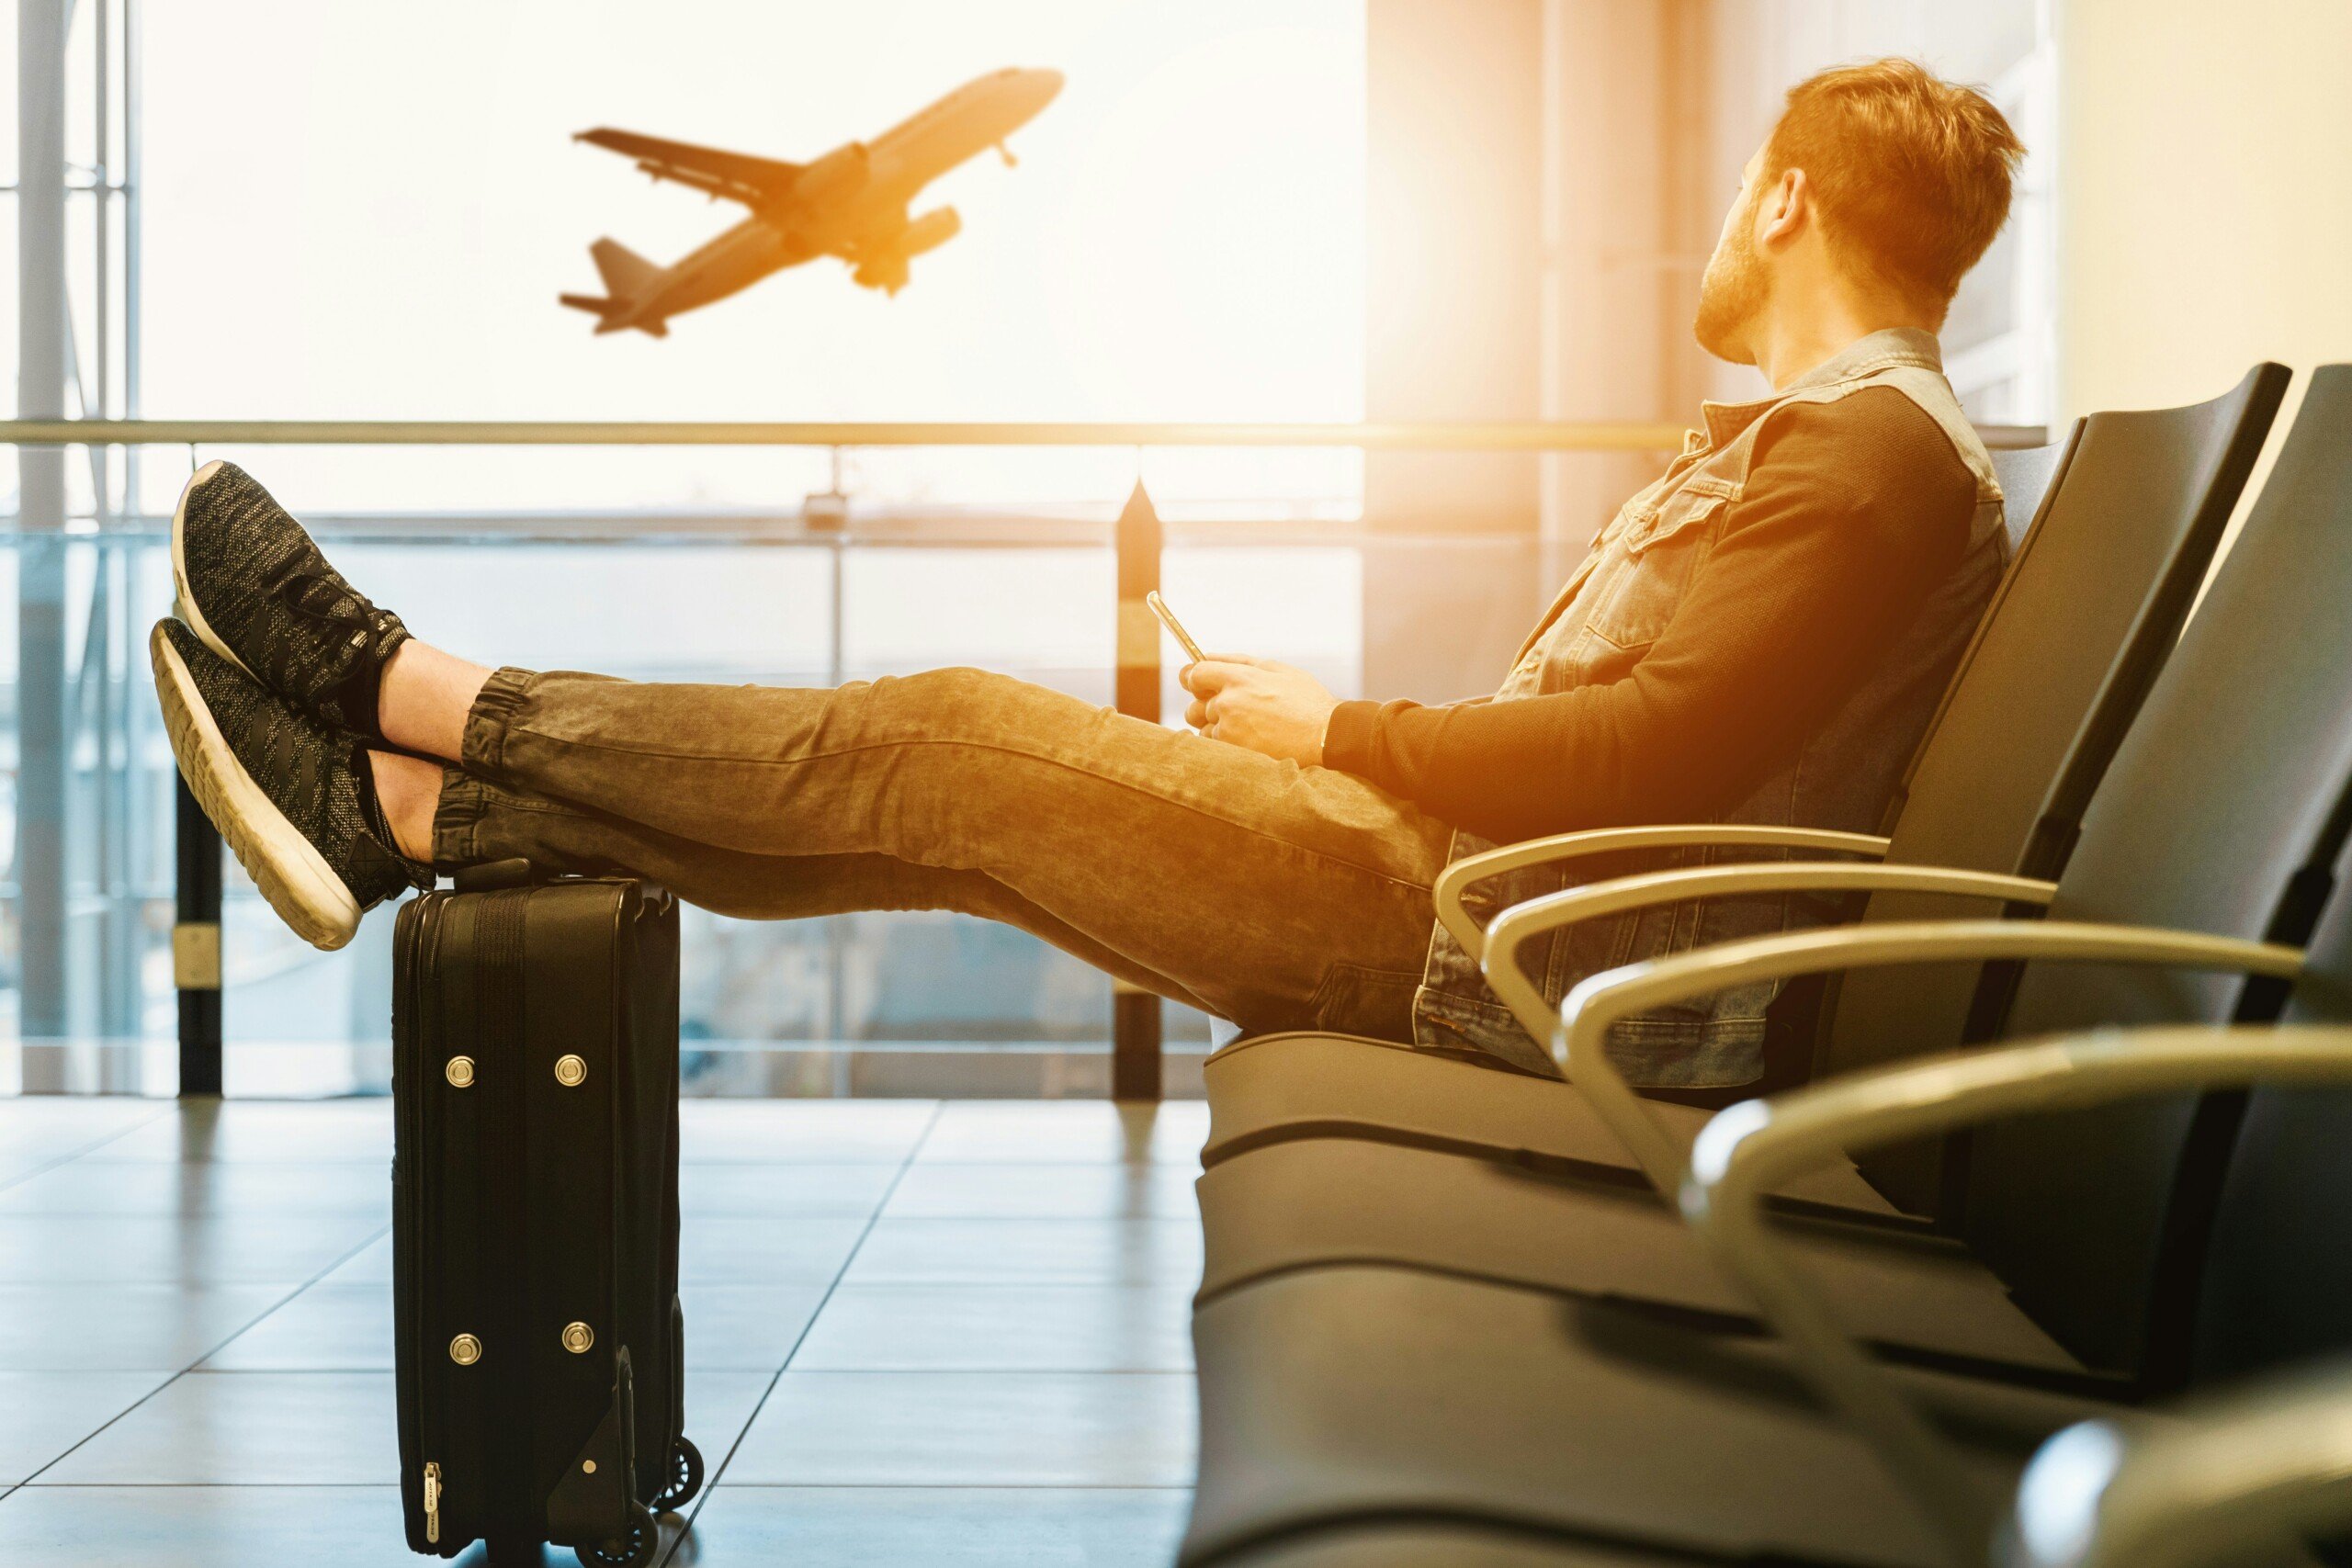 Perché dovresti diffidare della connessione Wi-Fi gratuita in aeroporto?